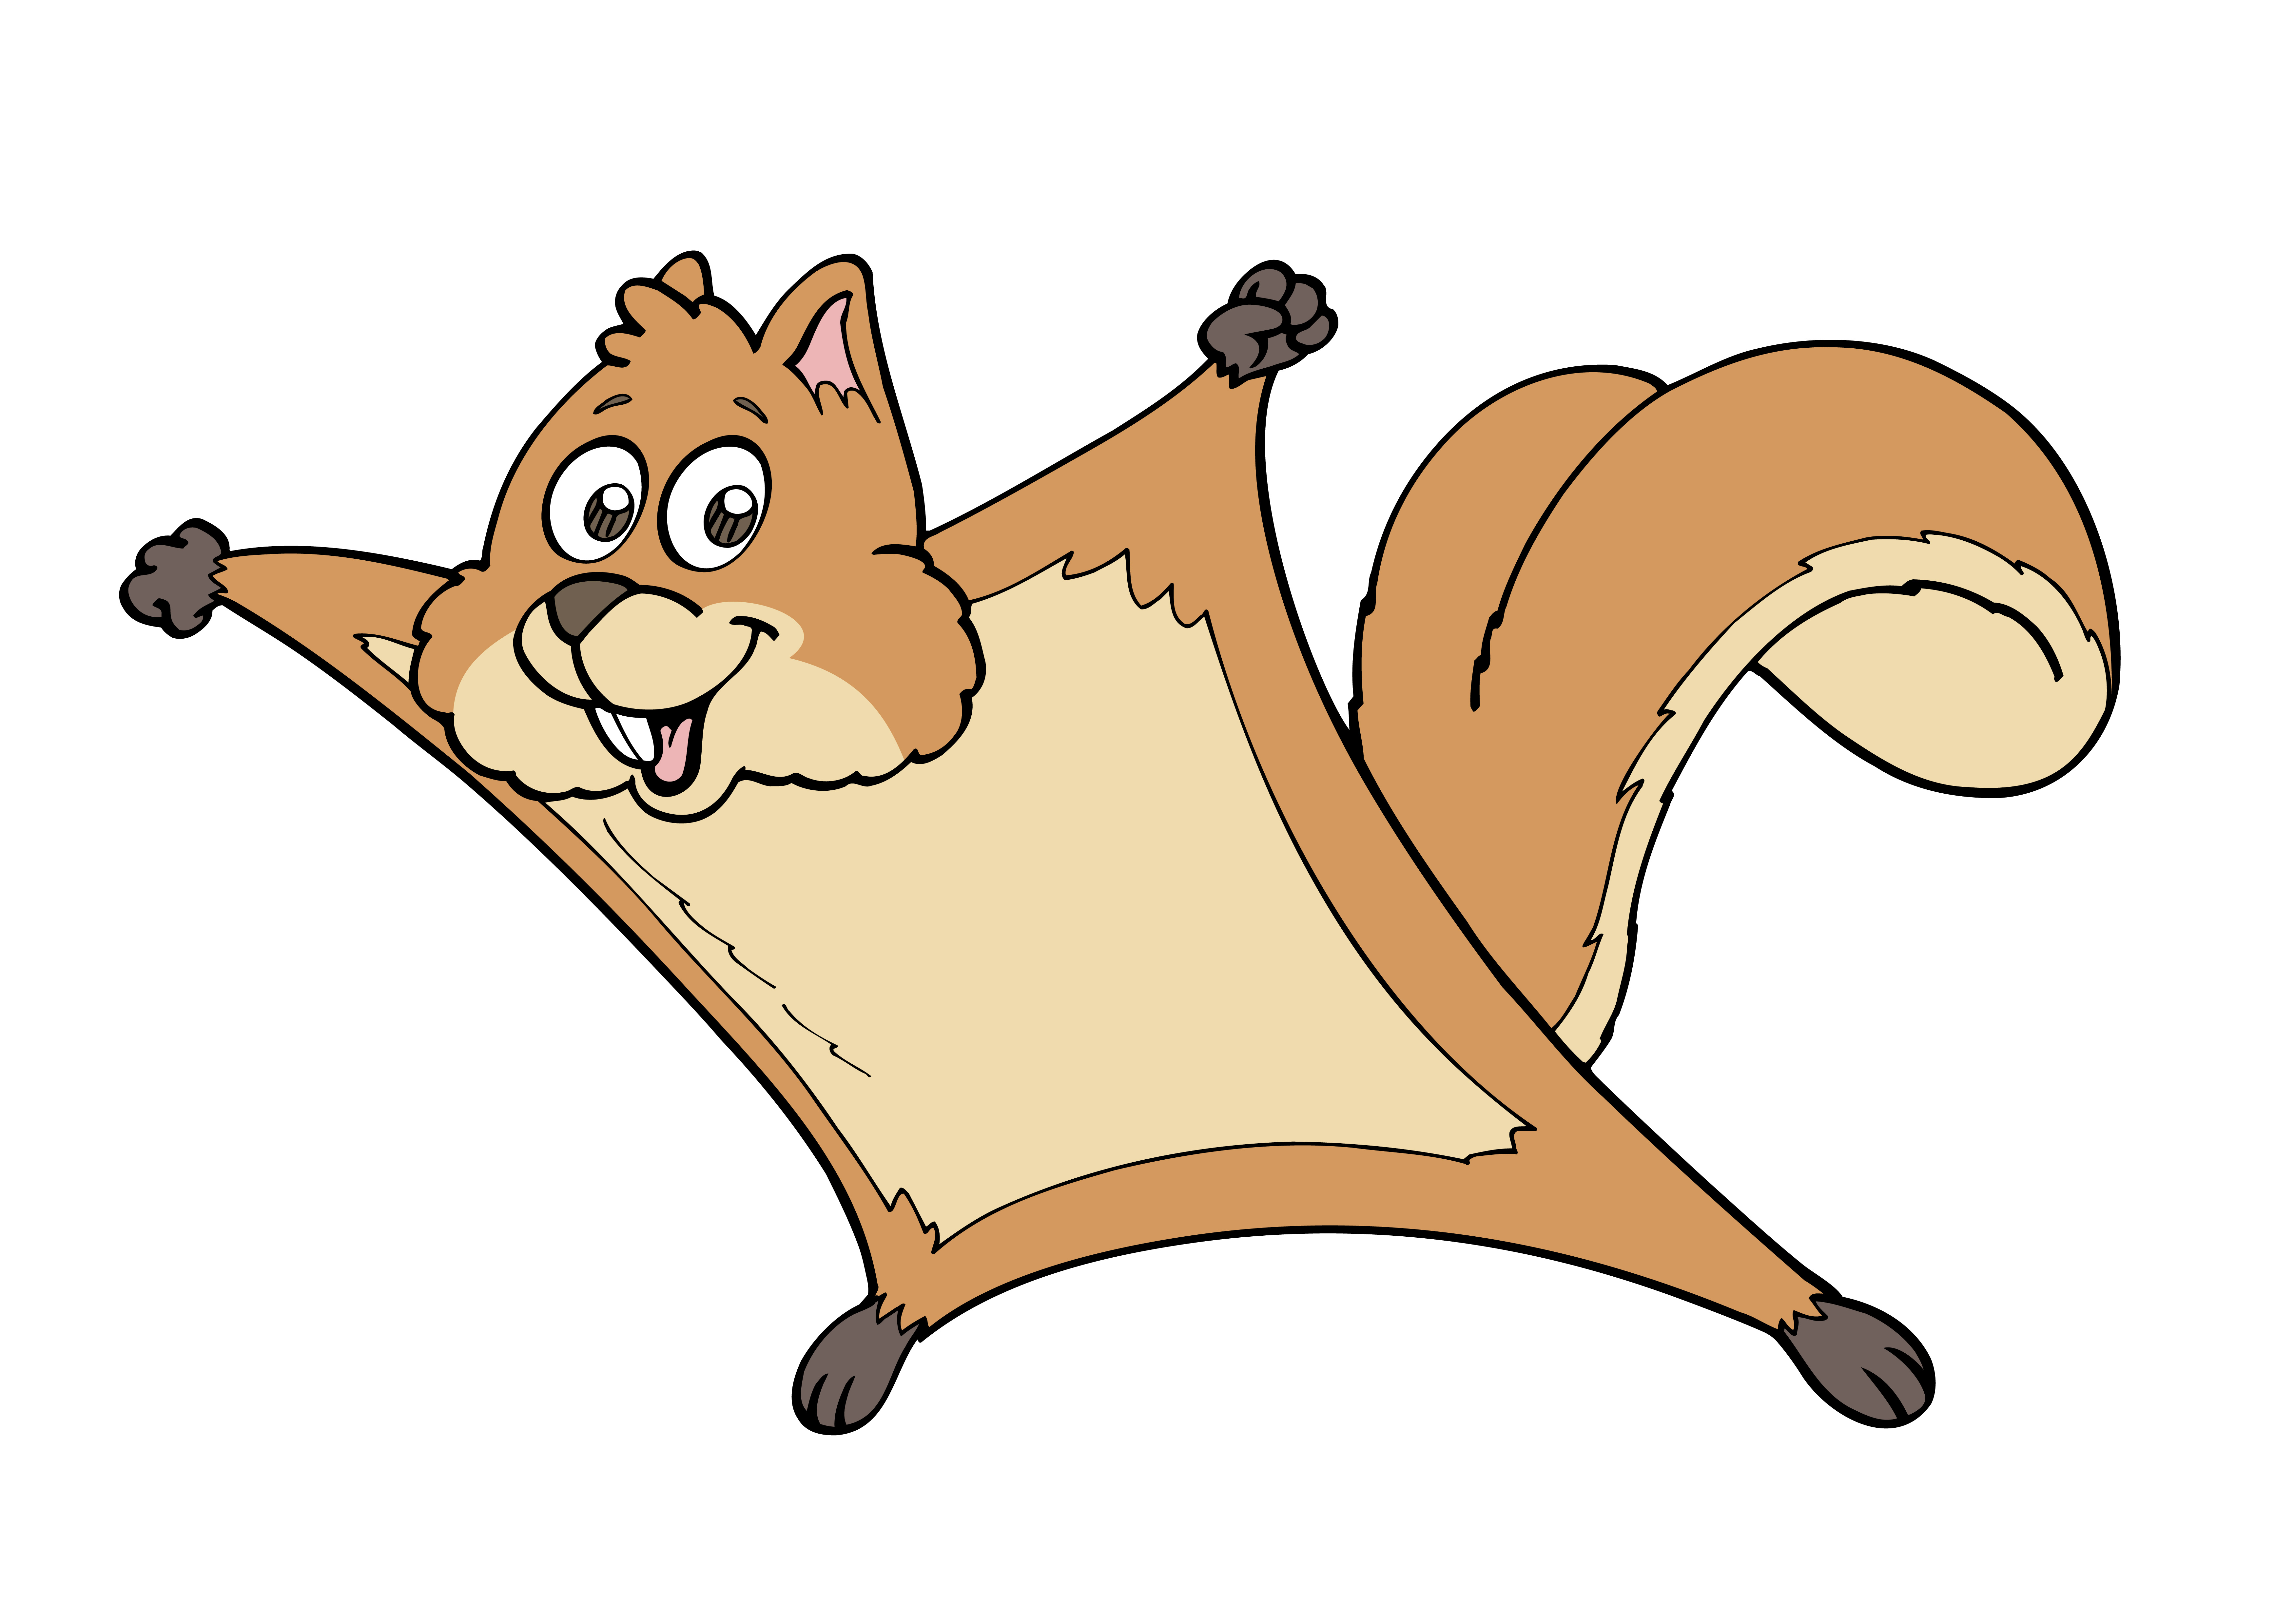 Squirrel Cartoon Images | Images Guru